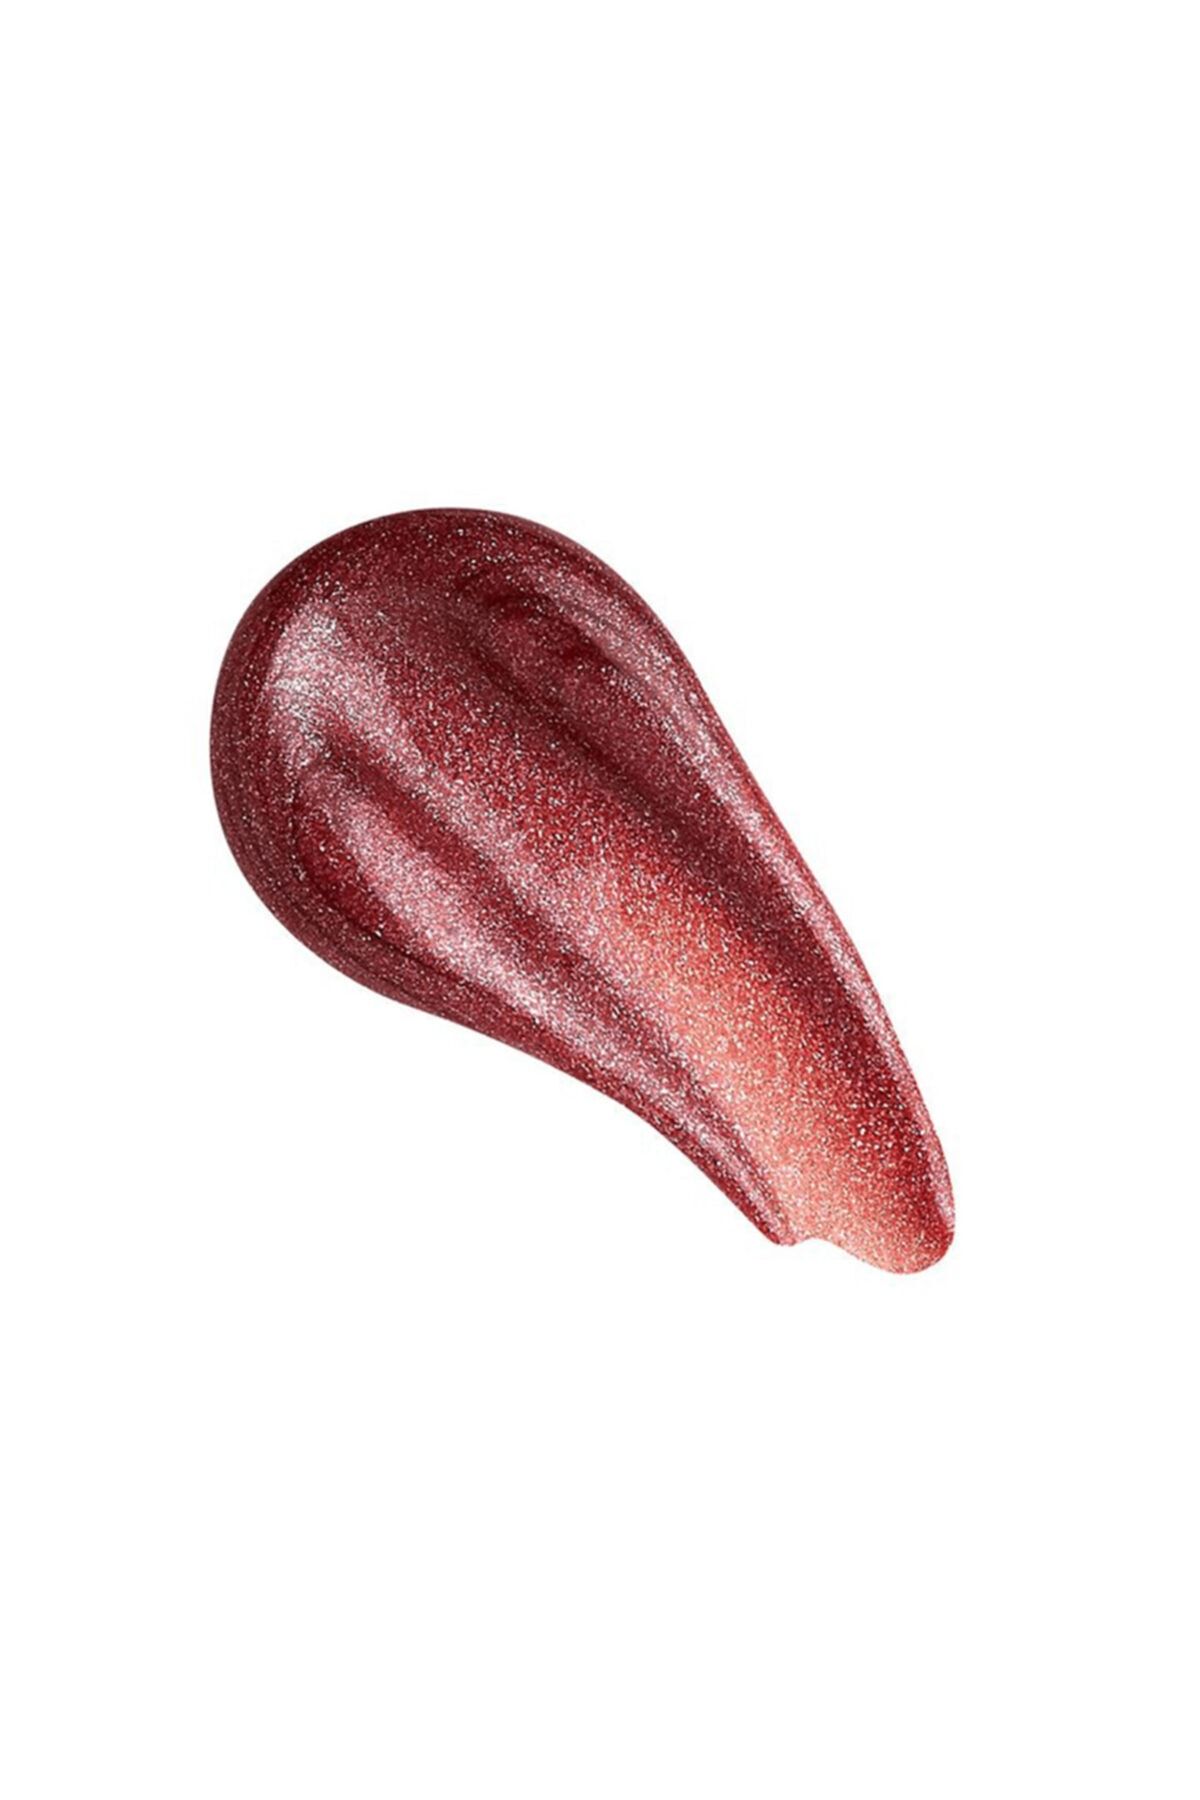 Revolution Shimmer Bomb Lip Gloss Distortion